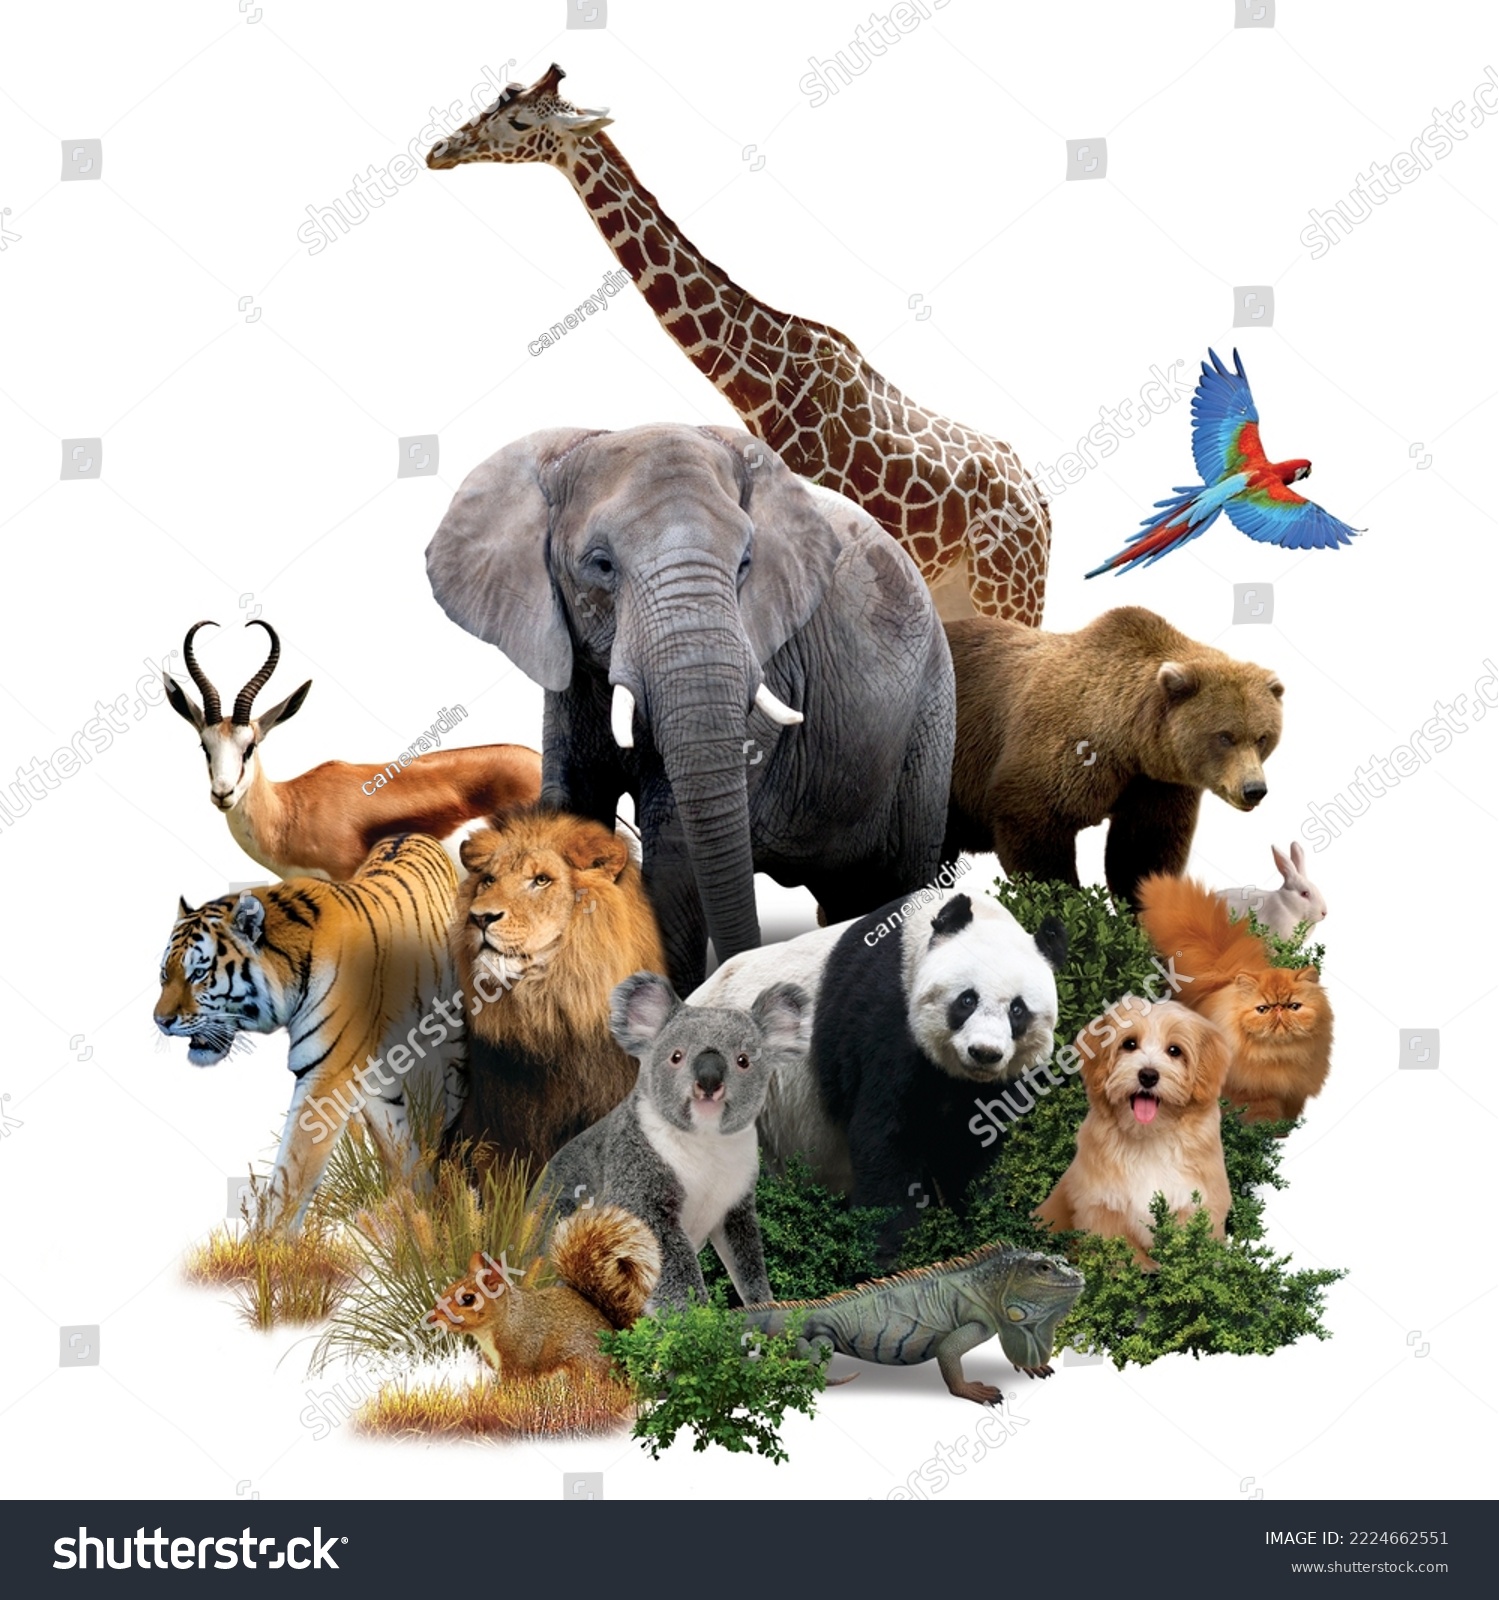 Zoo animals on a white background. giraffe, lion, elephant, monkey, panda, iguana, rabbit and others. #2224662551